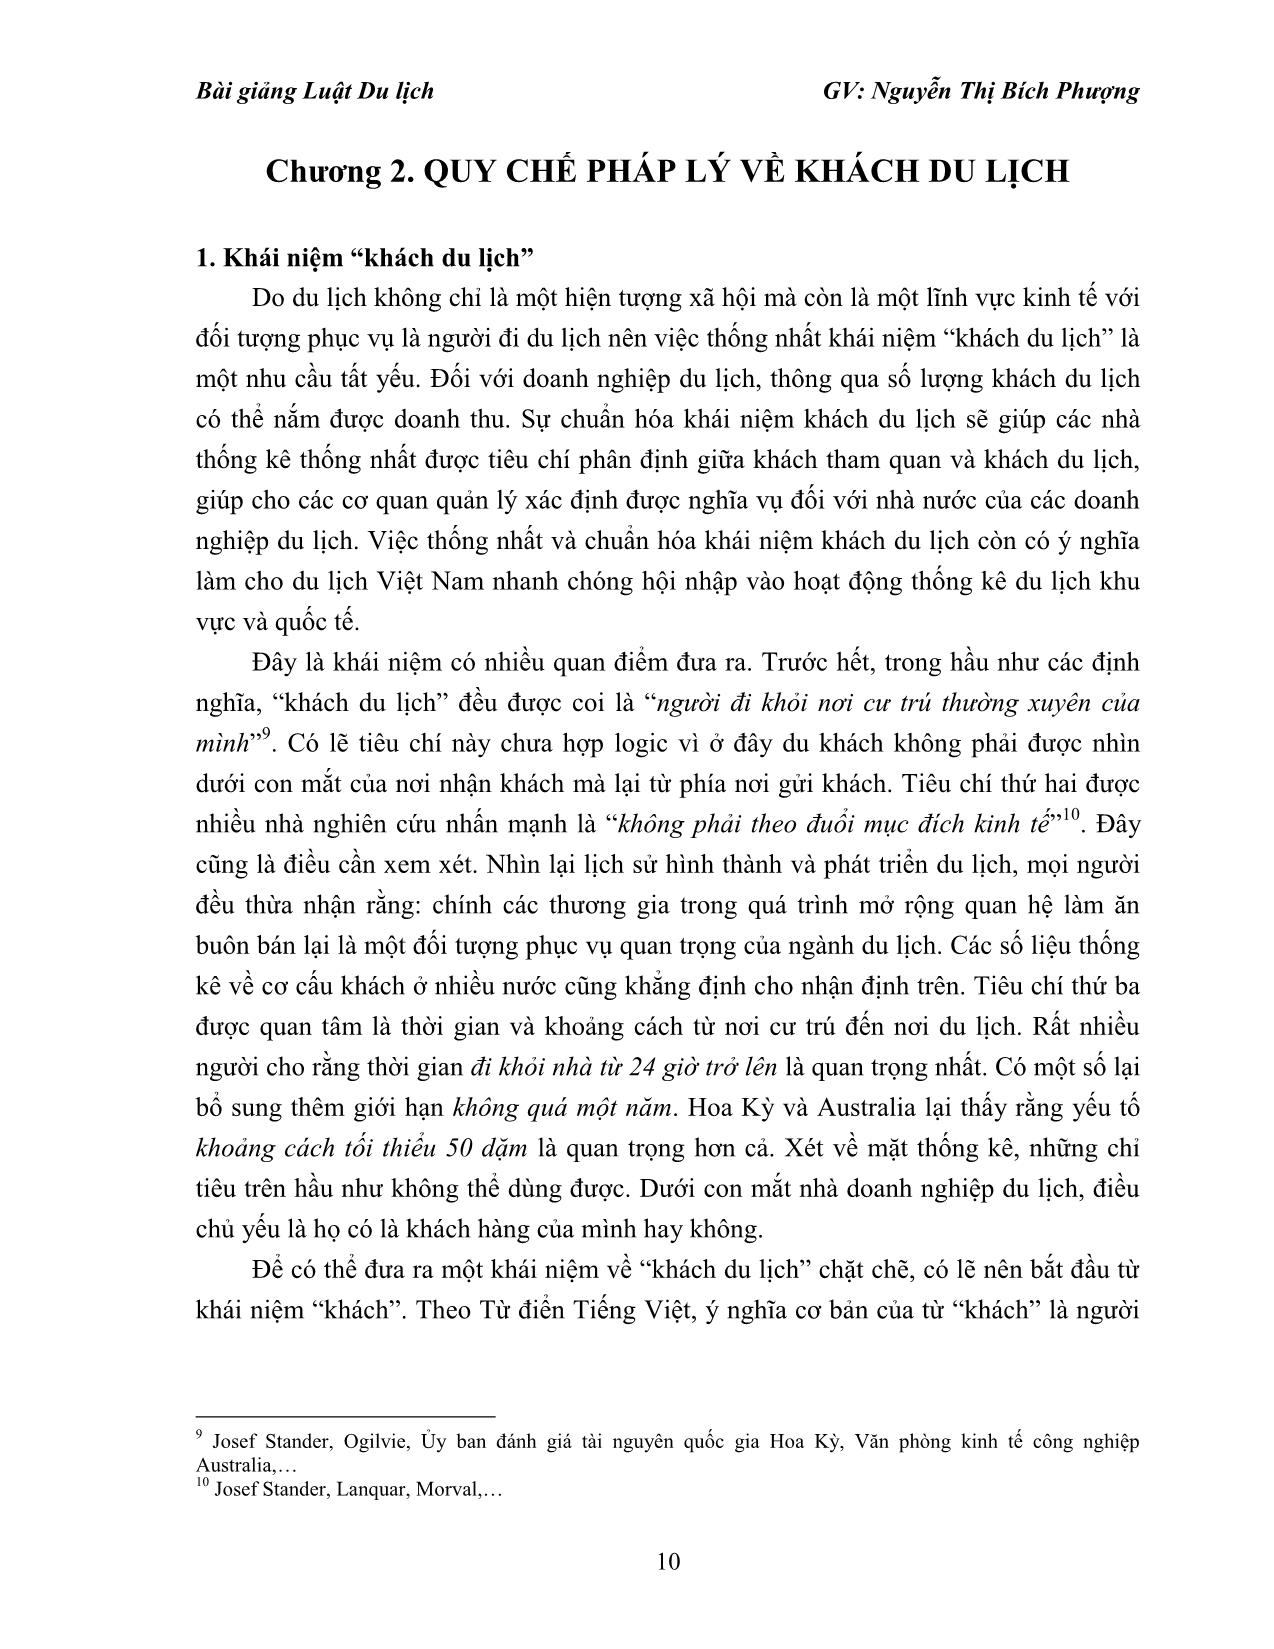 Bài giảng Luật du lịch - Nguyễn Thị Bích Phượng trang 10